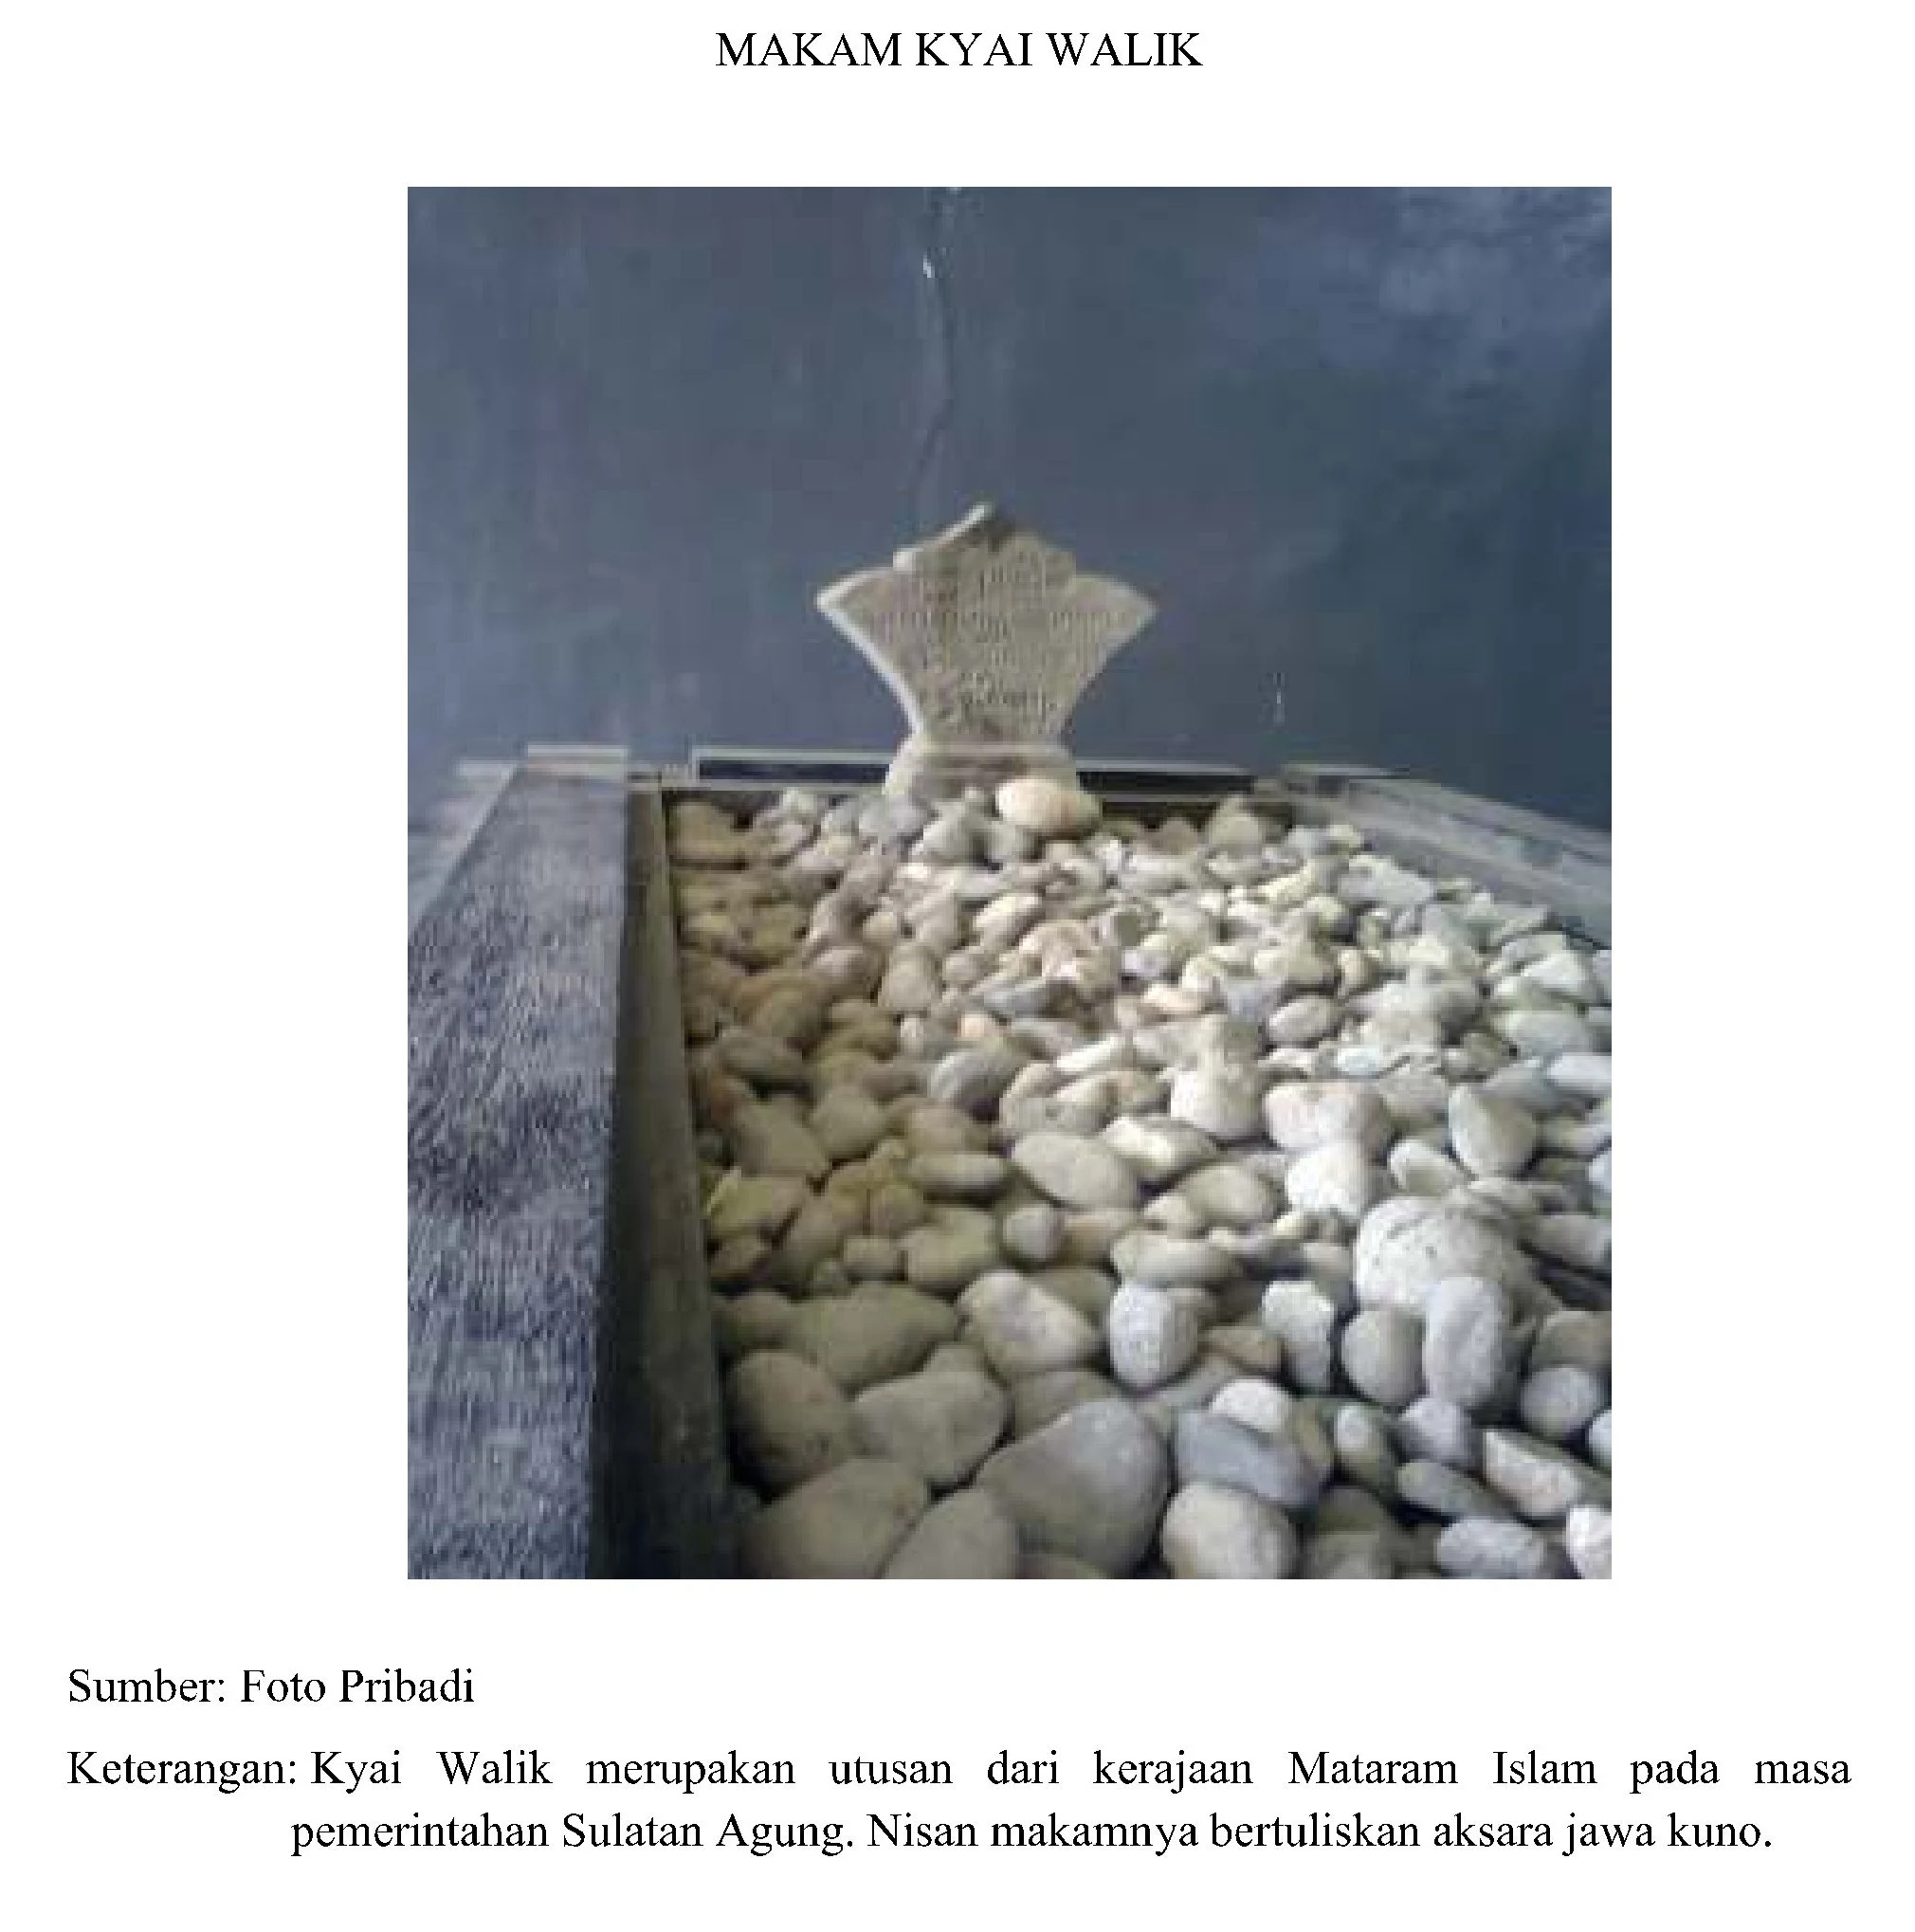 Makam Kyai Walik Belakang masjid Al-Mansyur Wonosobo